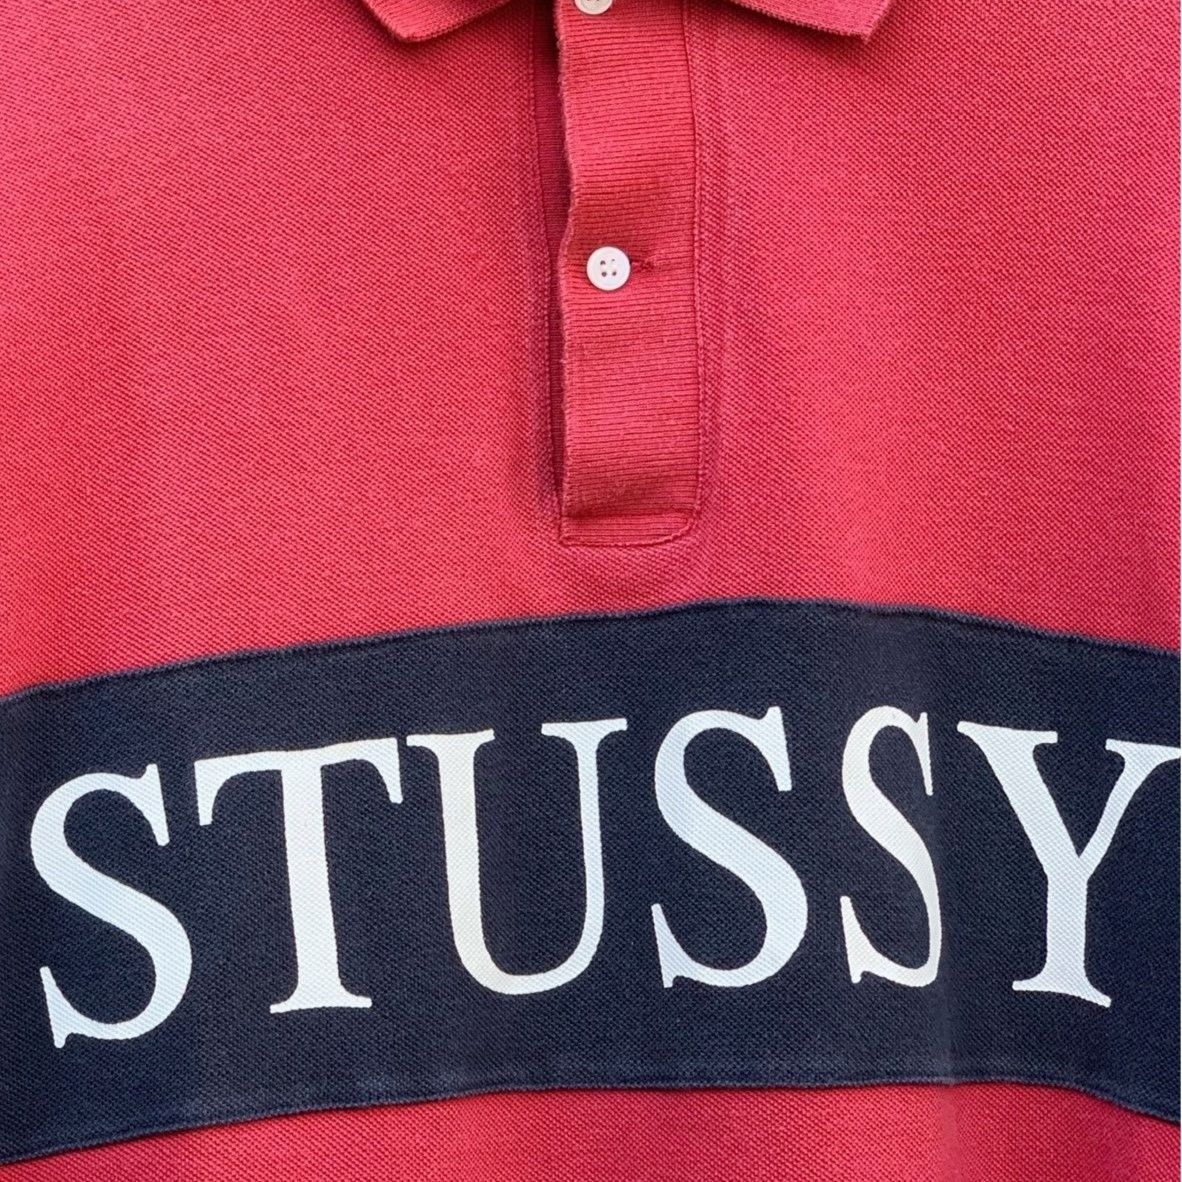 STUSSYステューシー ロングスリーブ鹿の子ポロシャツ 90年代 